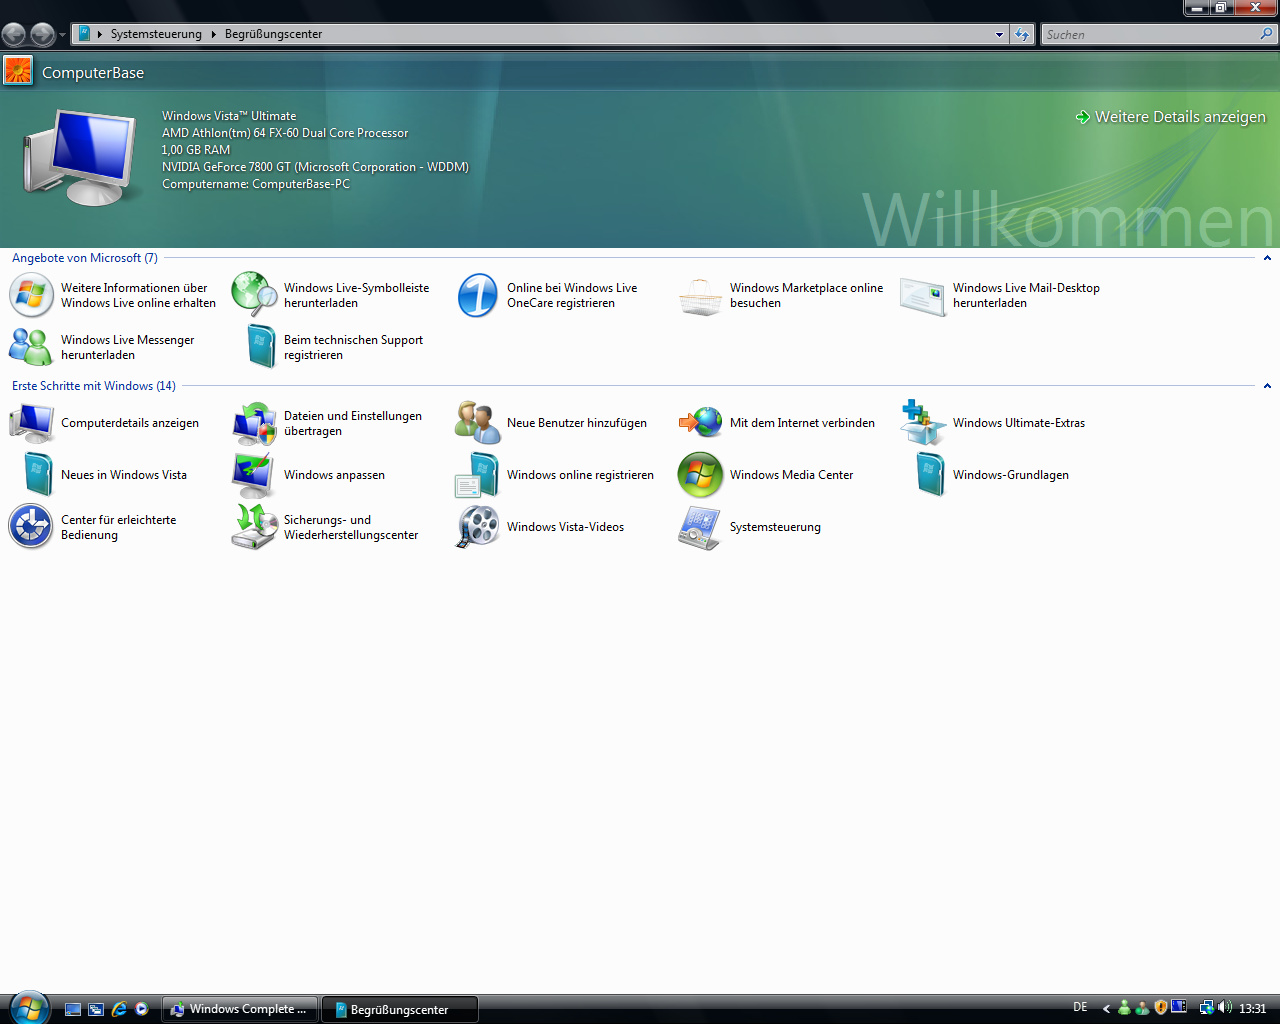 Windows Vista Build 5536 - Begrüßungscenter komplett